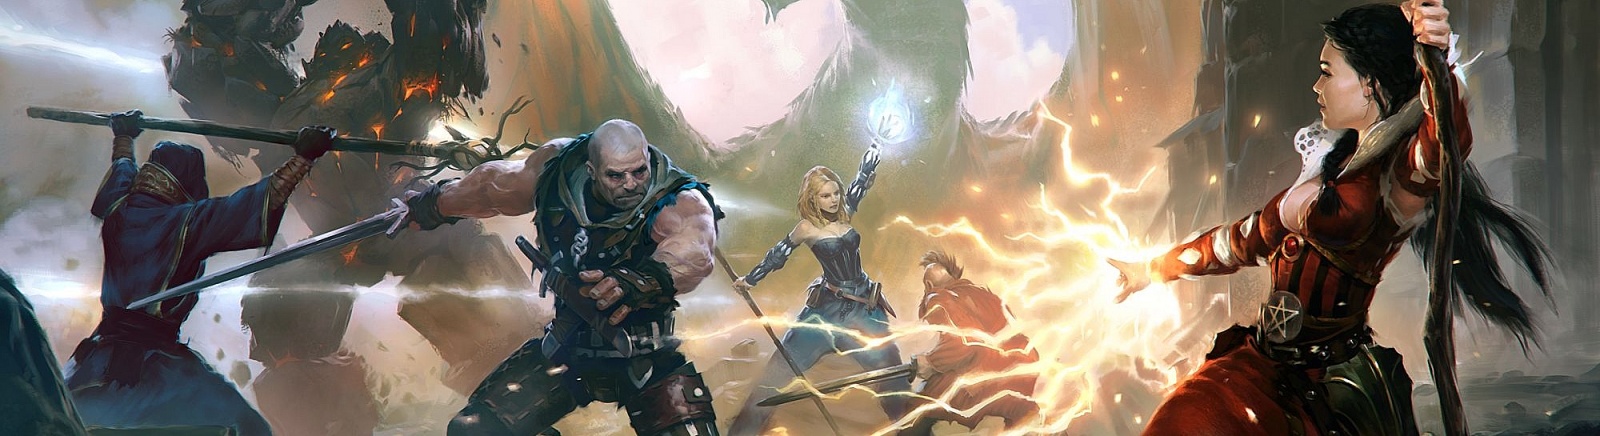 Дата выхода Witcher Battle Arena  на iOS и Android в России и во всем мире